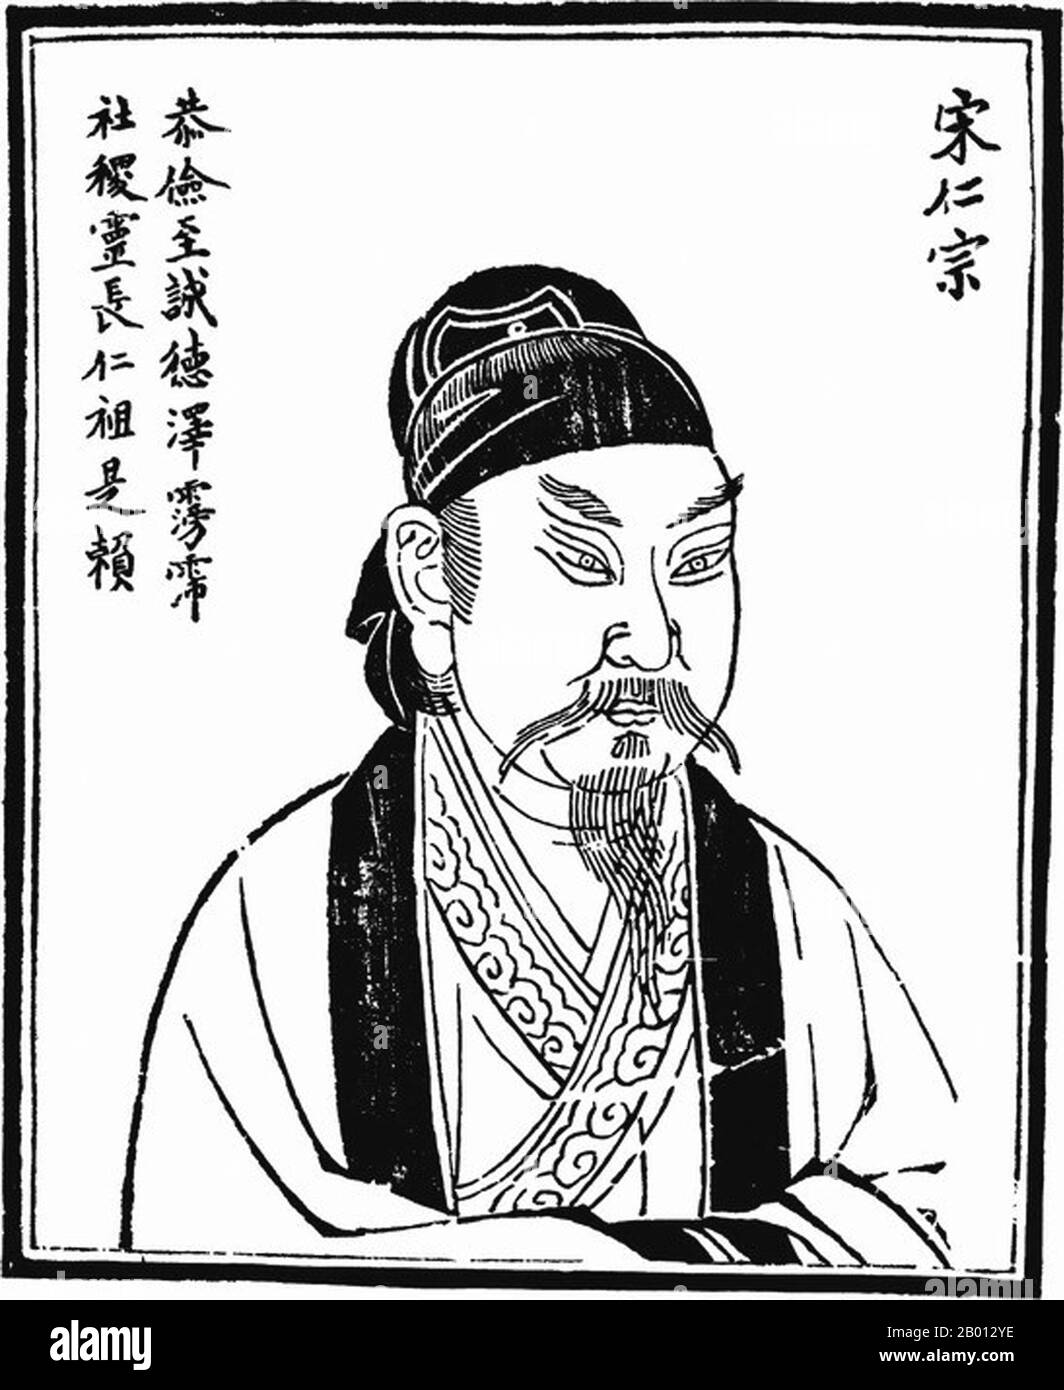 China: Kaiser Hongxi, 4. Herrscher der Ming-Dynastie (r. 1424-1425). Illustration, 15.-17. Jahrhundert. Der Hongxi-Kaiser (1378-1425), persönlicher Name Zhu Gaochi und Tempelname Renzong, war der vierte Kaiser der Ming-Dynastie. Sein Zeitname bedeutet „enorm hell“. Als ältester Sohn von Kaiser Yongle fungierte er während der nördlichen Militärkampagnen seines Vaters oft als Regent in Nanjing oder Peking. Als Kaiser verlegte er die Hauptstadt von Peking zurück nach Nanjing und schaffte den Grenzhandel von Tee für Pferde ab. Er starb jedoch ein Jahr nach seiner Regierungszeit an einem Herzinfarkt. Stockfoto